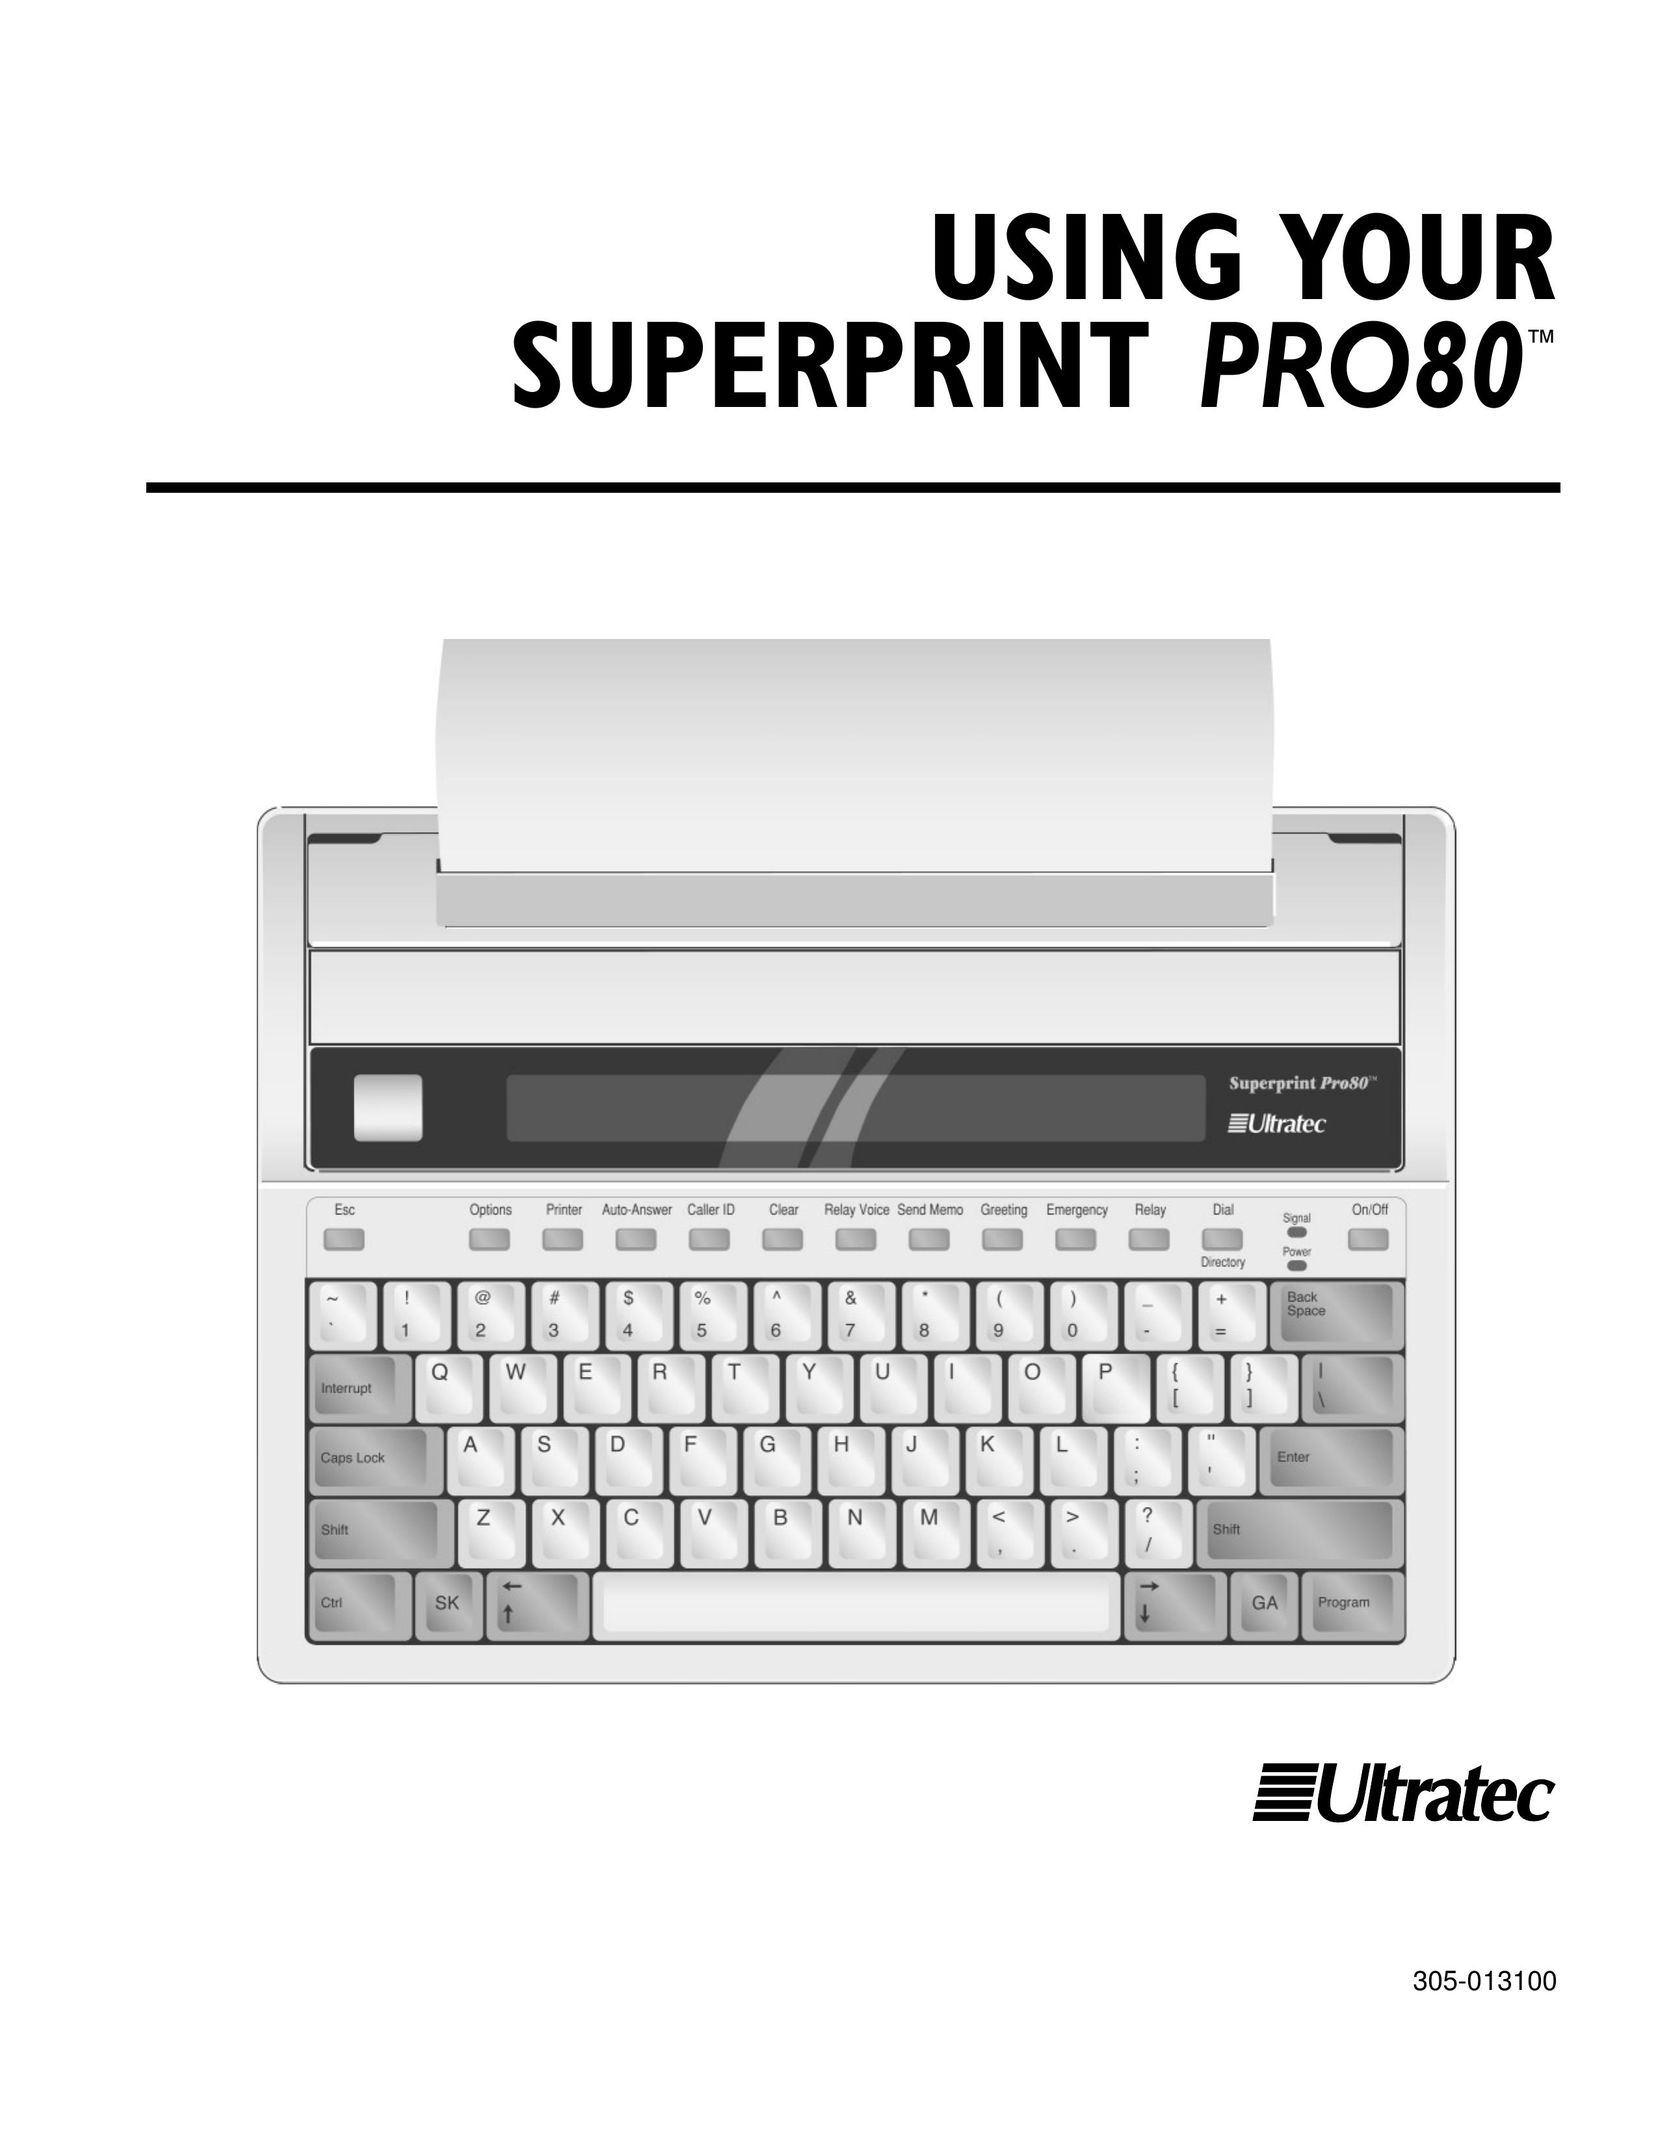 Ultratec PRO80TM Printer User Manual